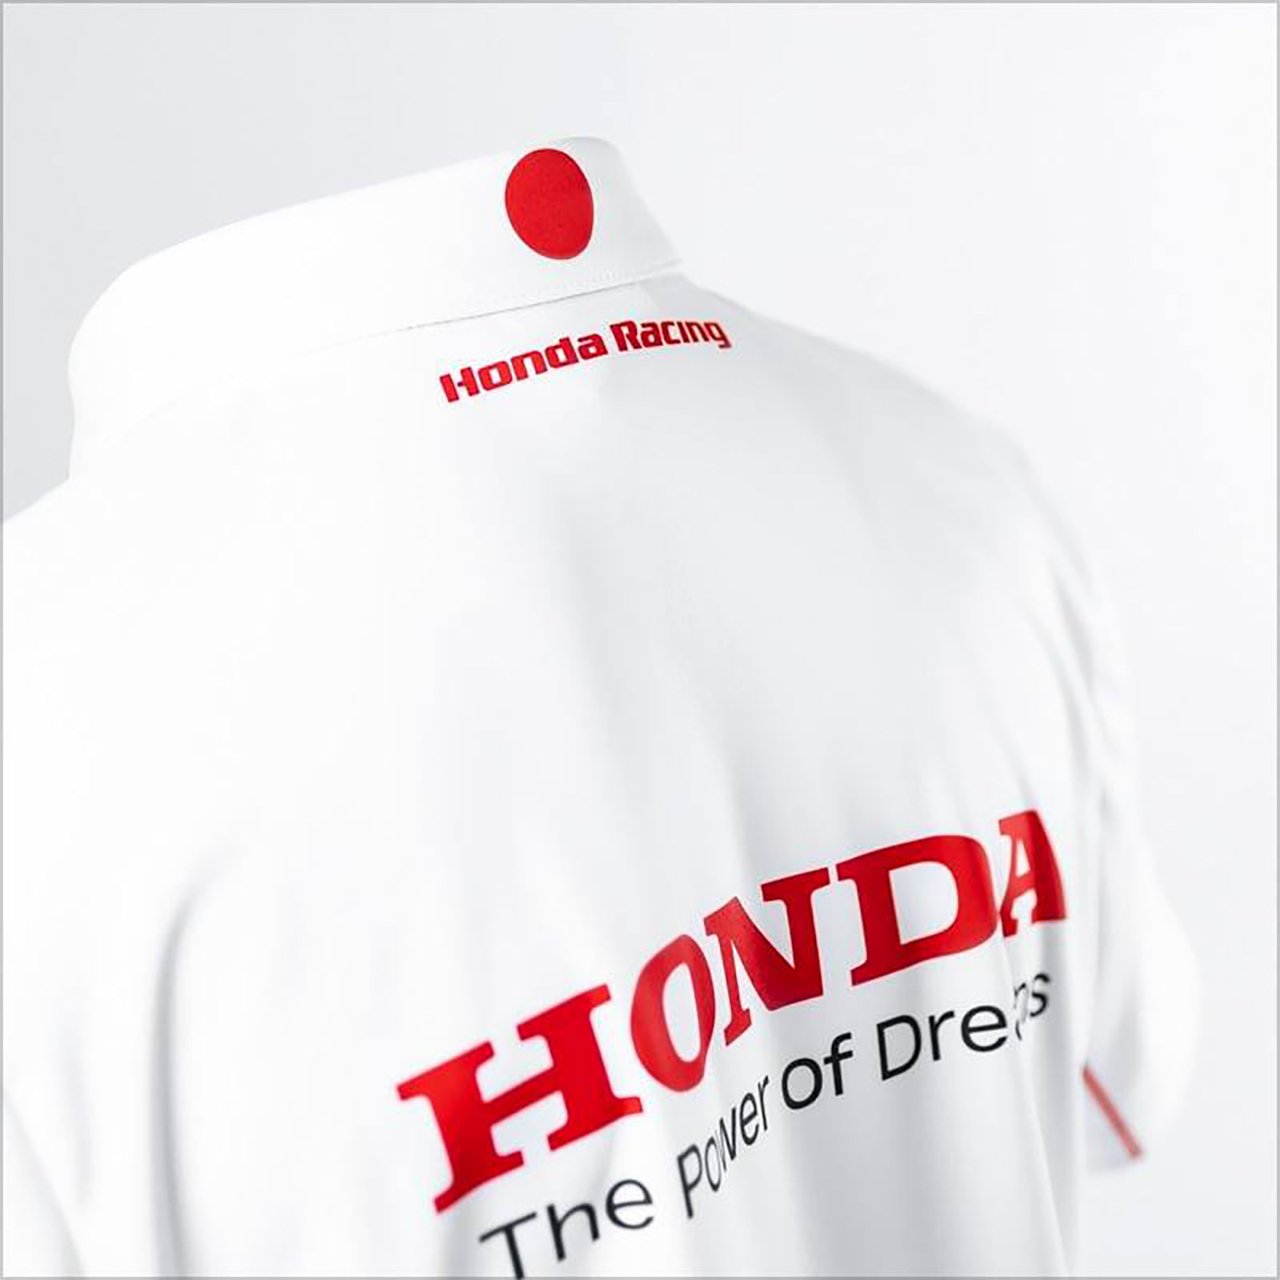 Honda チーム 2021 レプリカポロシャツ